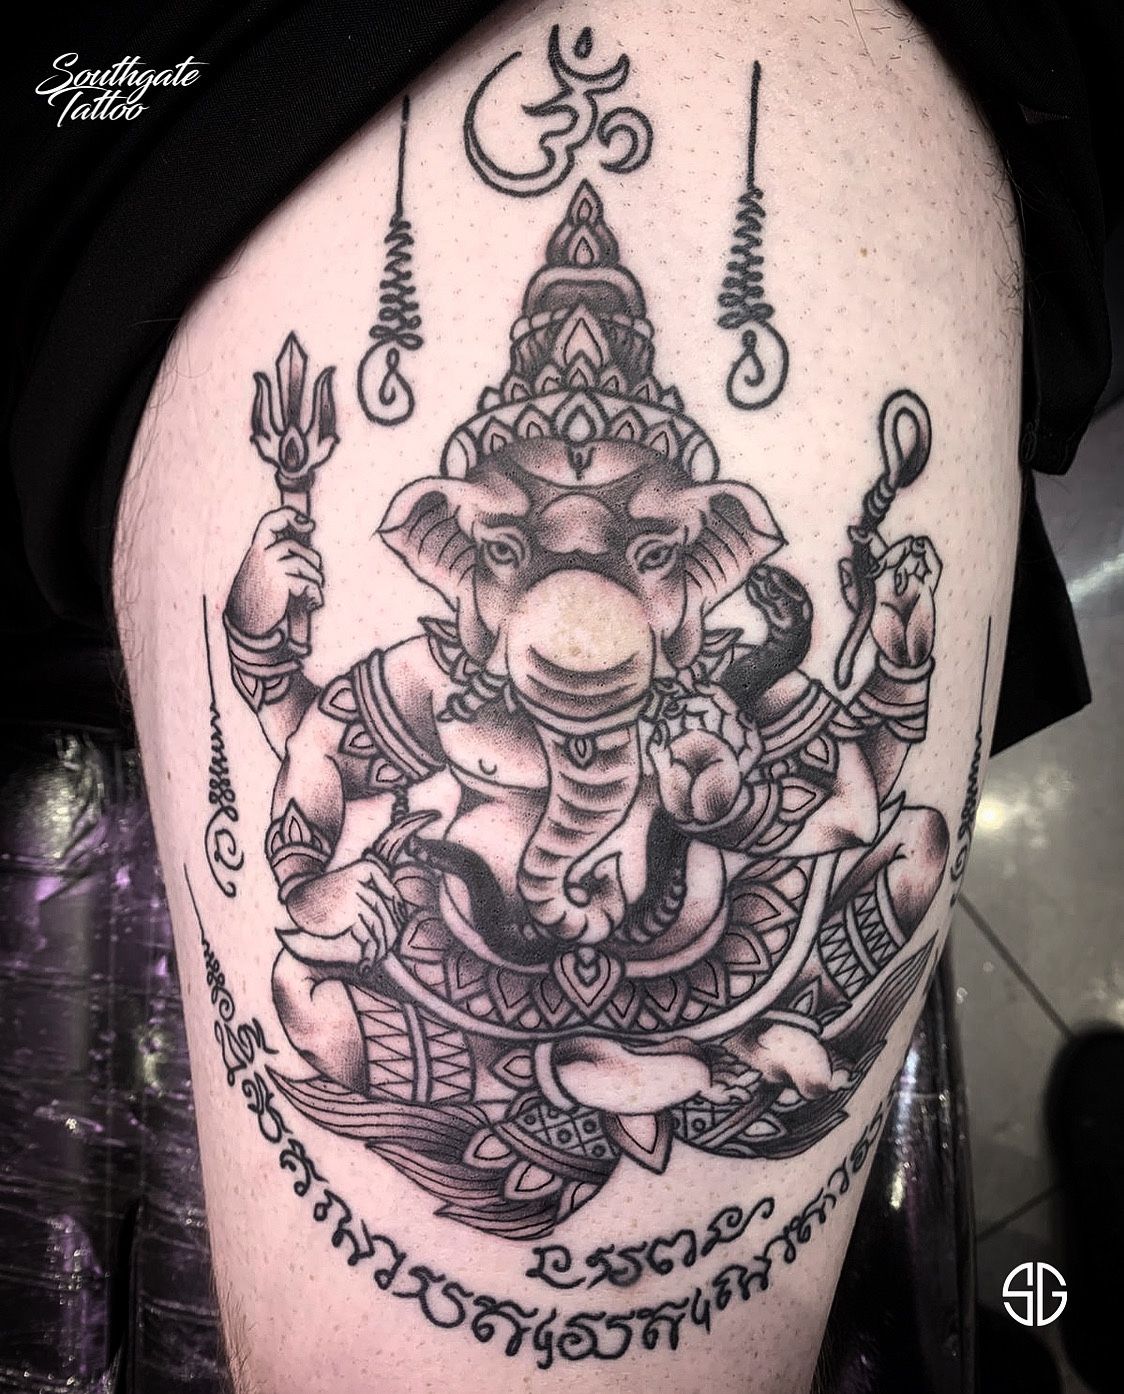 Tanya Buxton - Black and Grey Tattoo | Big Tattoo Planet | Back tattoo, Ganesha  tattoo, Black and grey tattoos